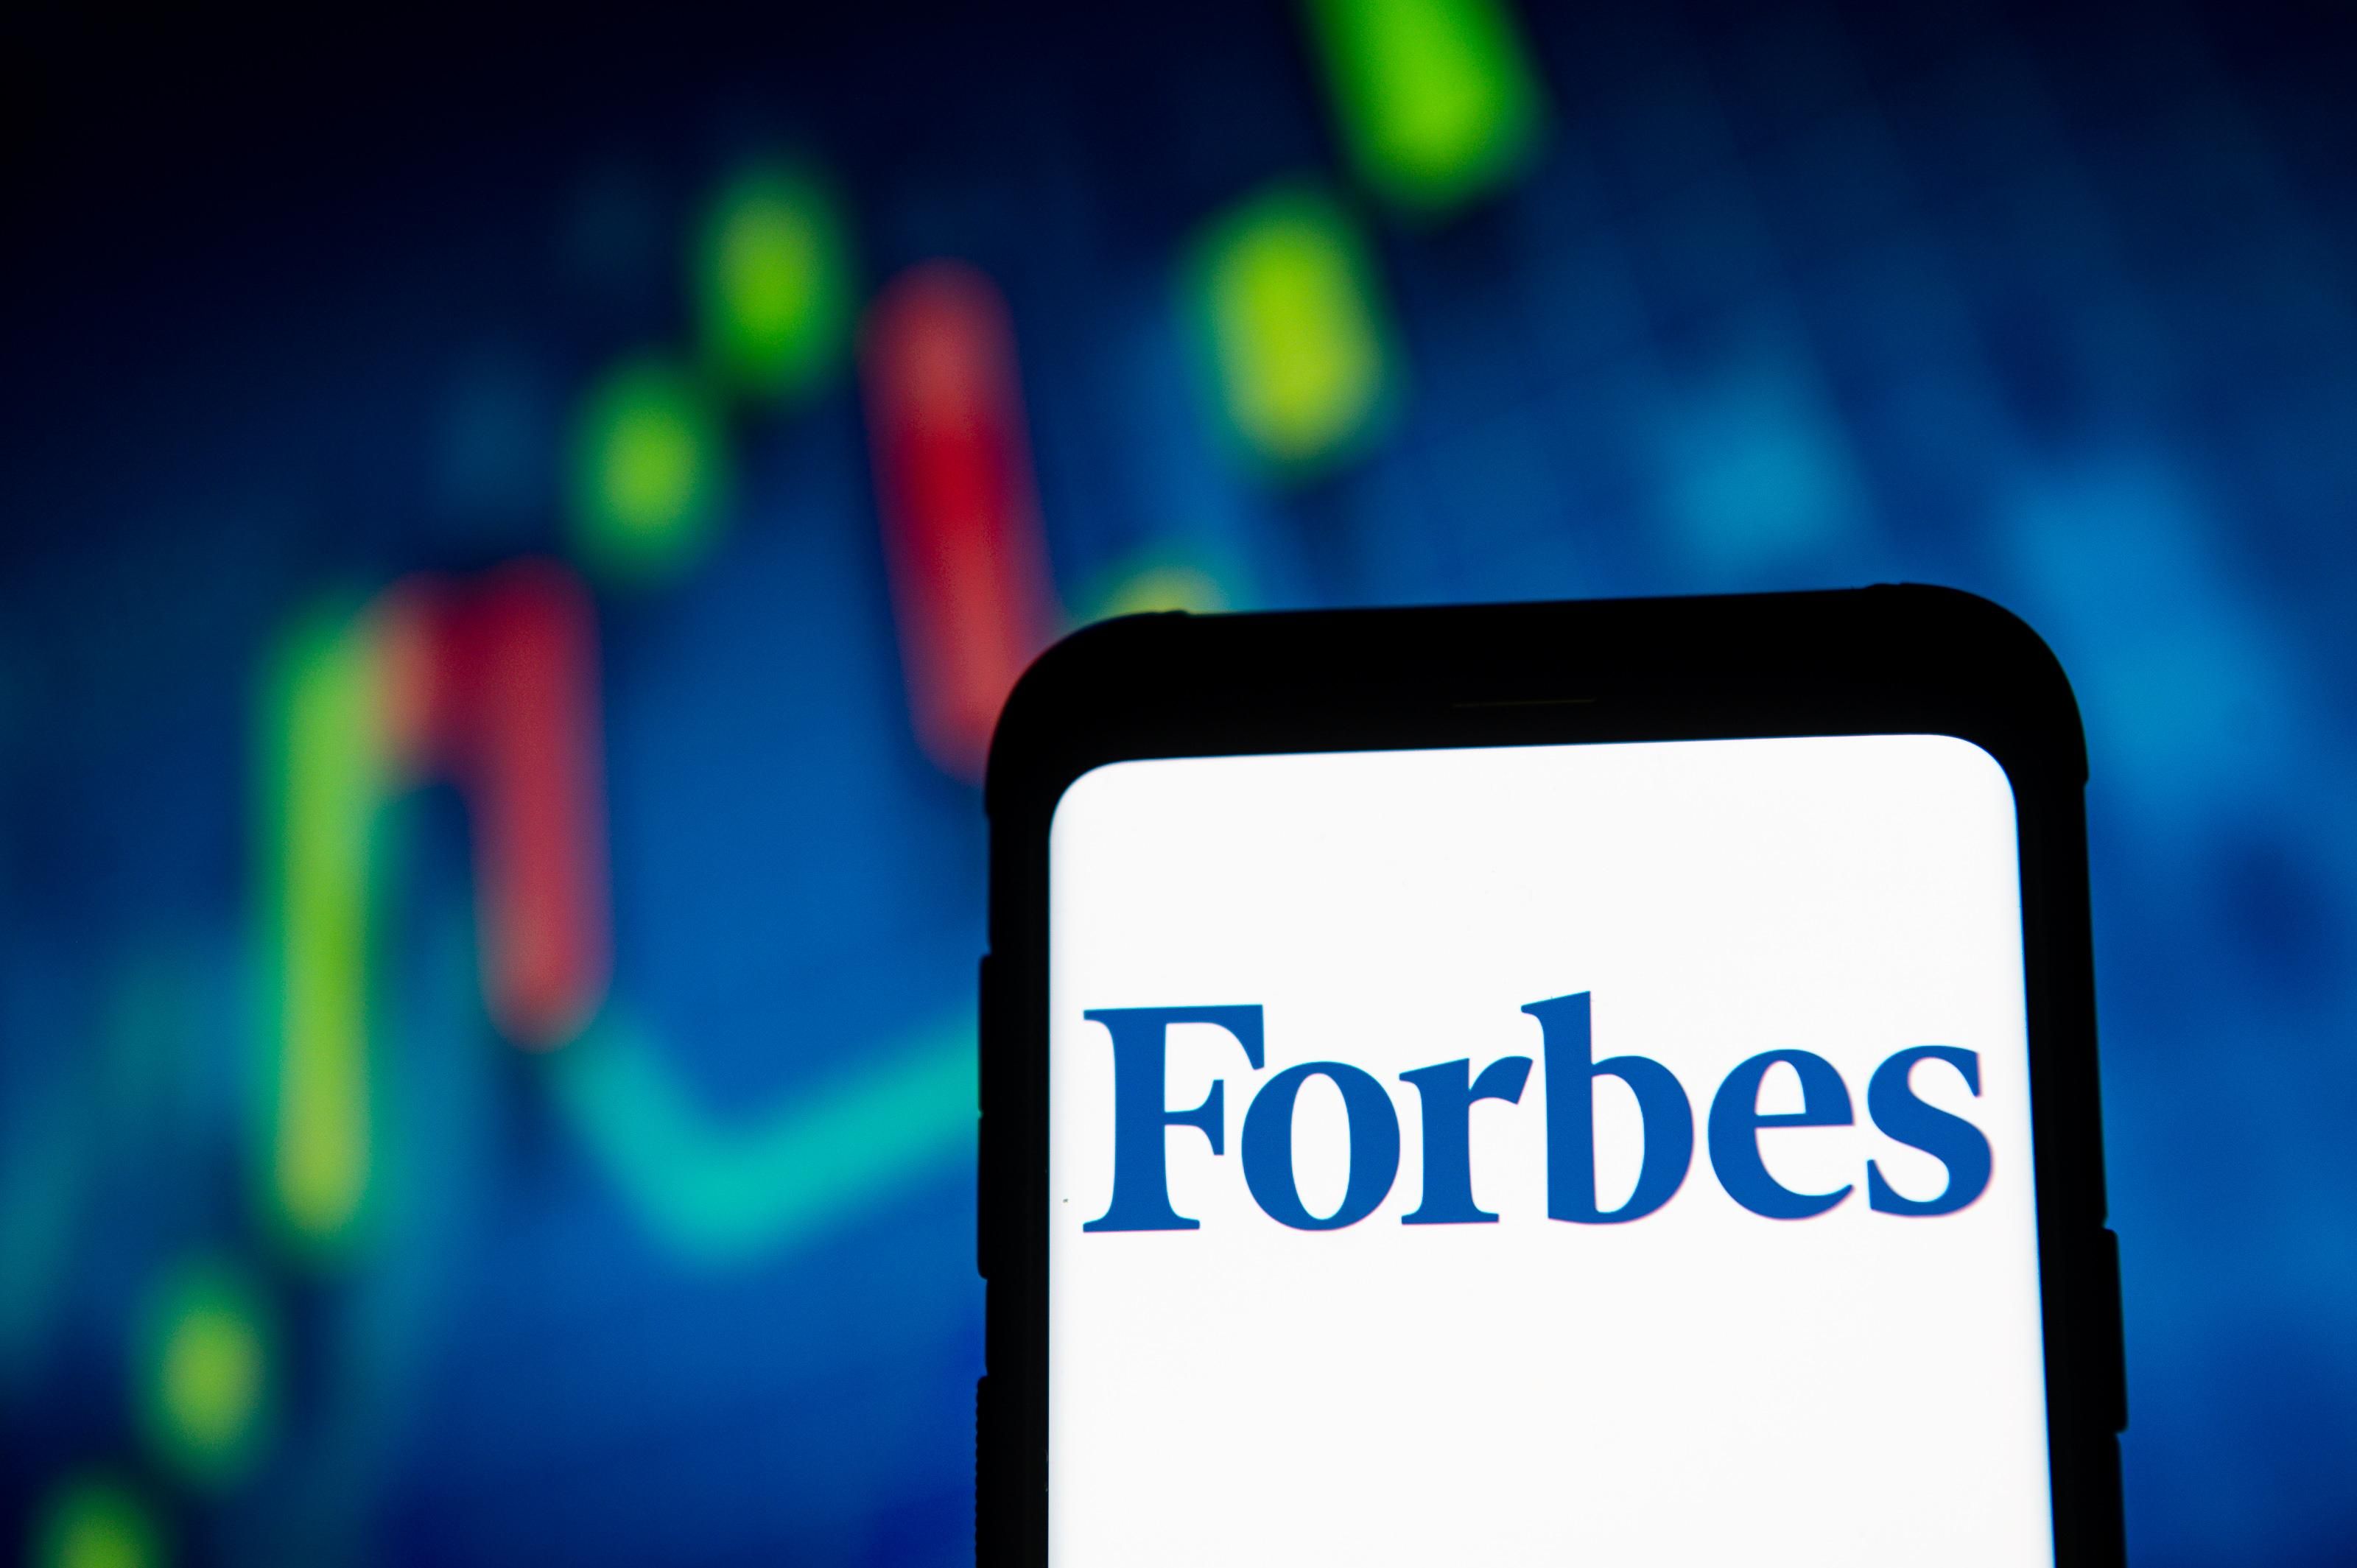 Інвестори планують викупити Forbes: скільки вони готові заплатити та які опції має журнал - Фінанси